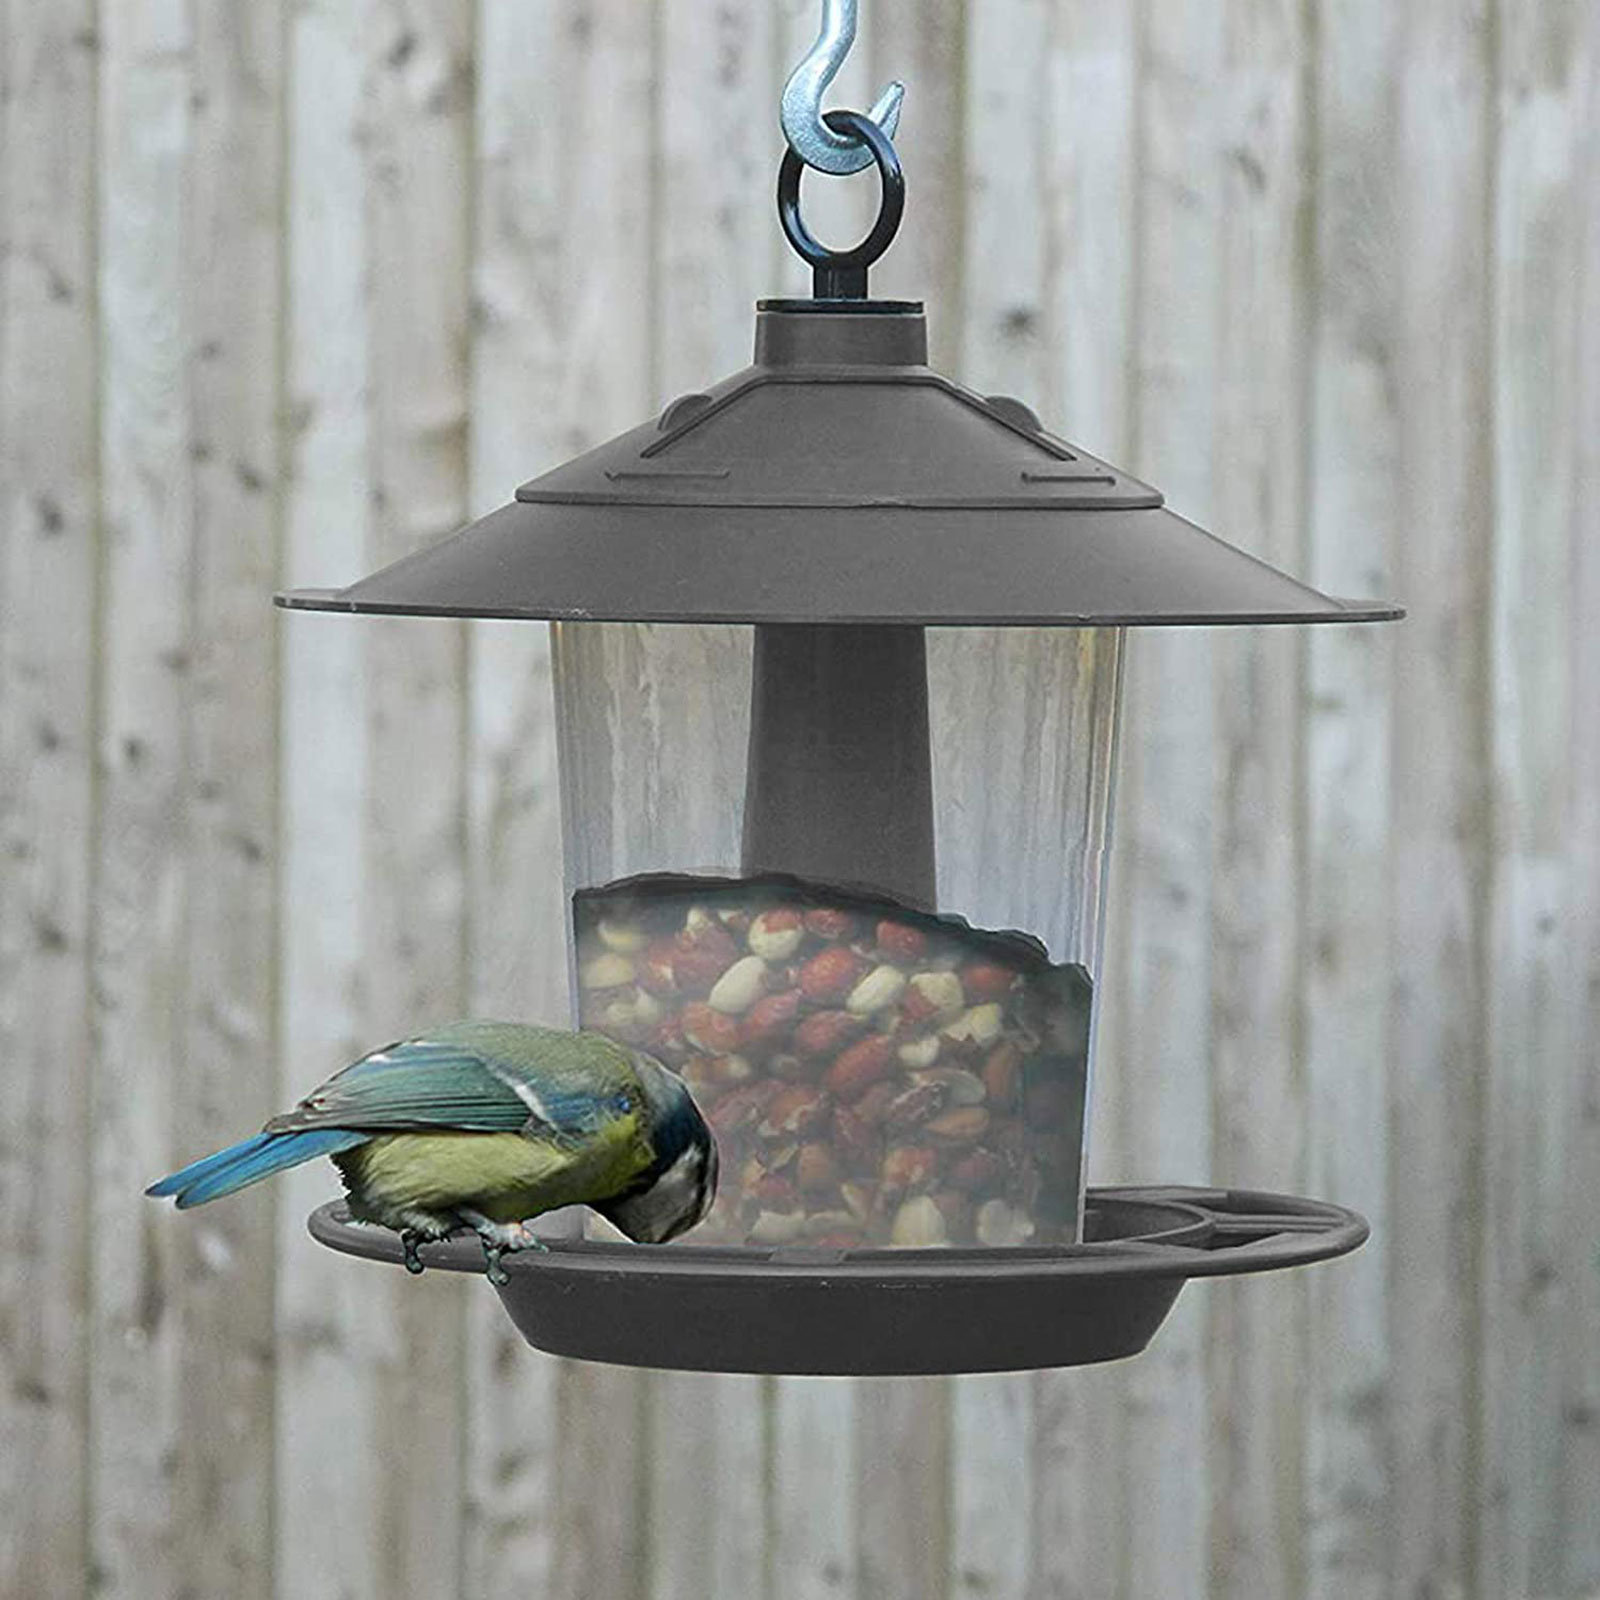 New Plastic Garden Hanging Bird Feeder Birds Seed And Nut Outdoor Wild Lantern 